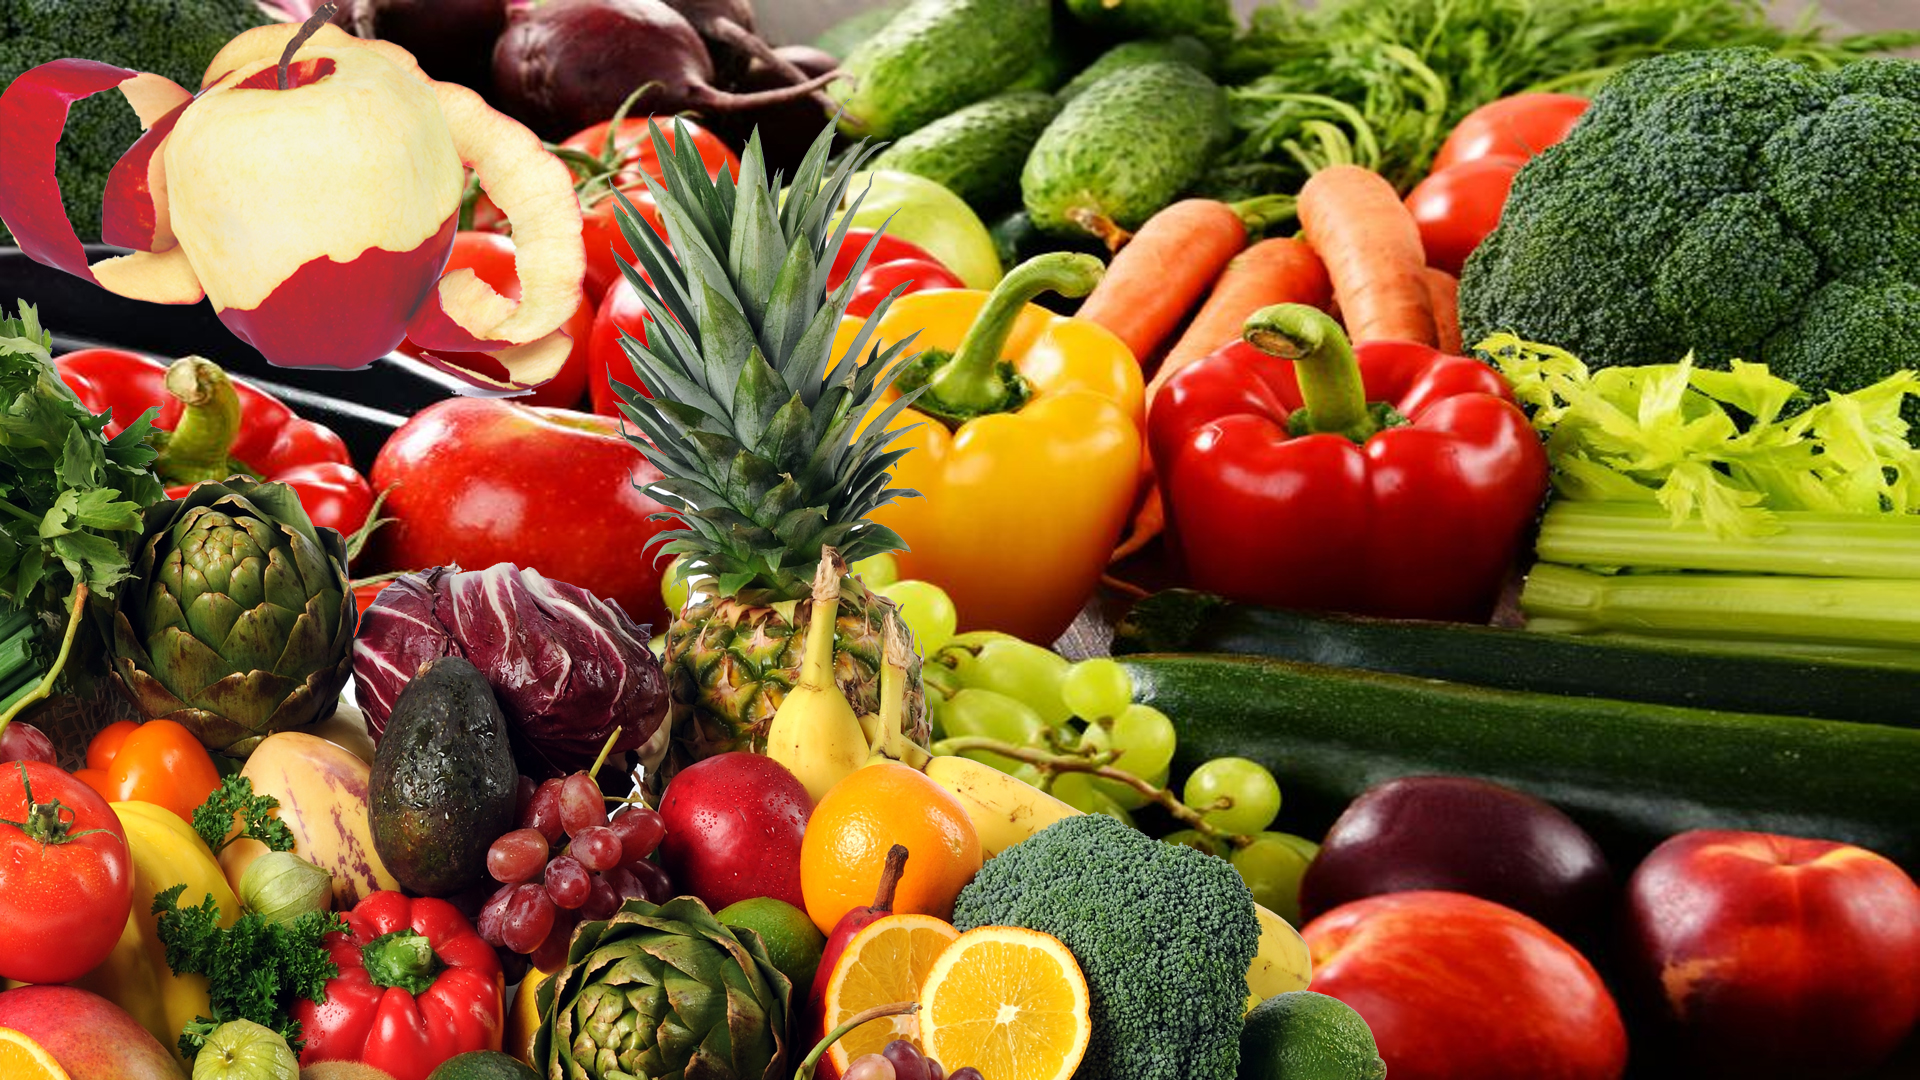 Вкусные фрукты и овощи